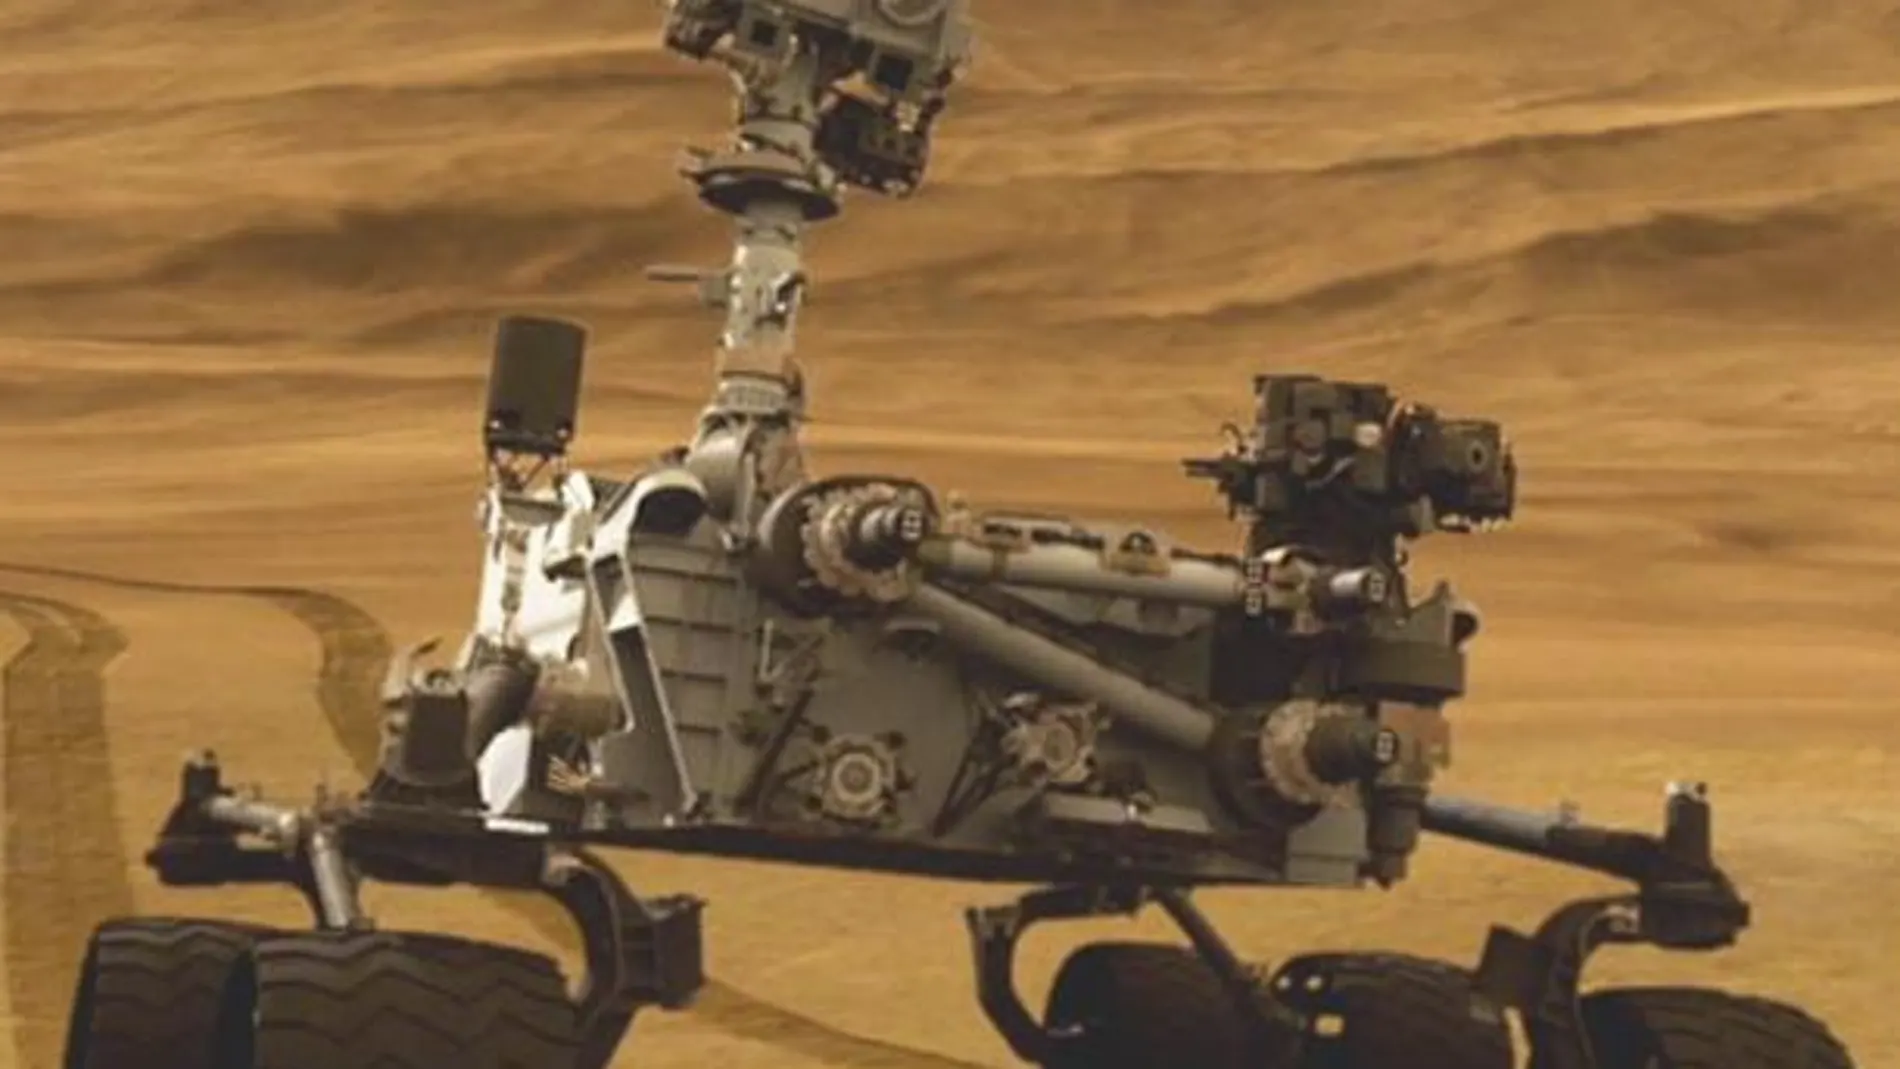 El rover ha recorrido 80 metros de forma autónoma